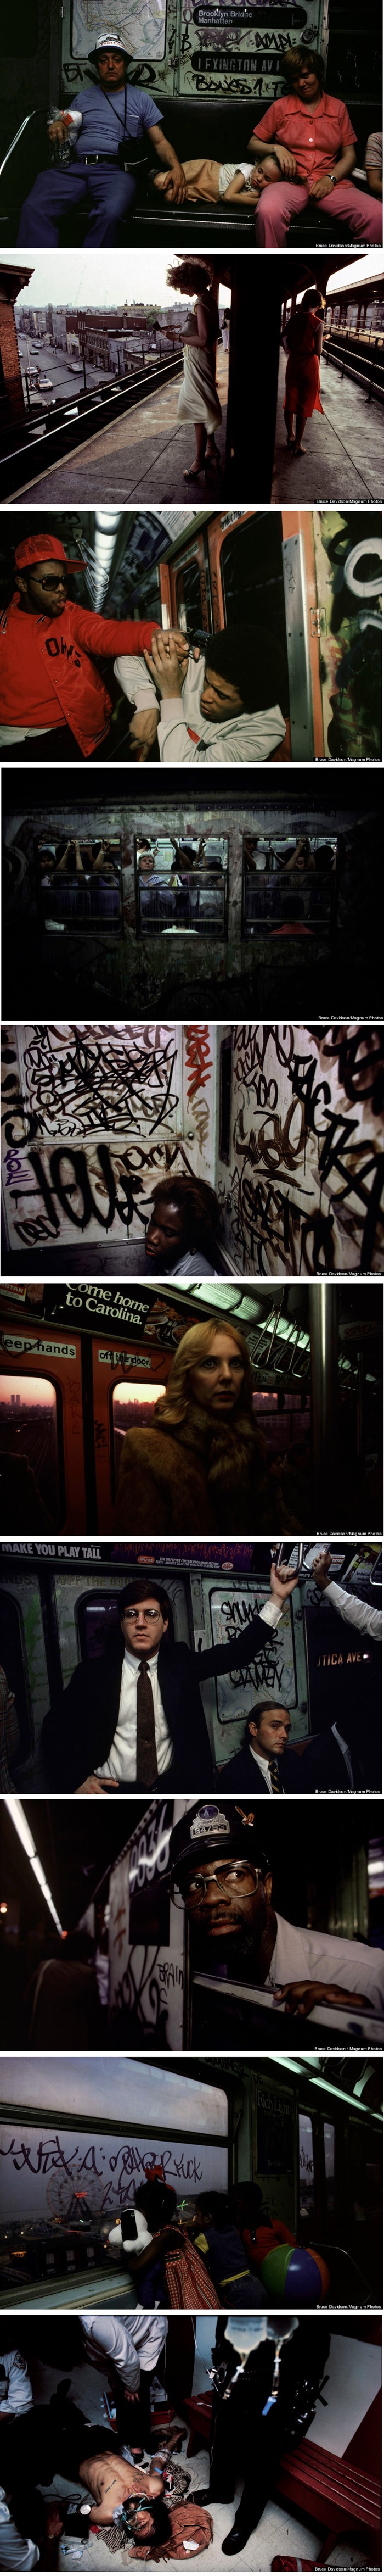 Opasni prizori iz zloglasne njujorške podzemne prikaz su minulih vremena